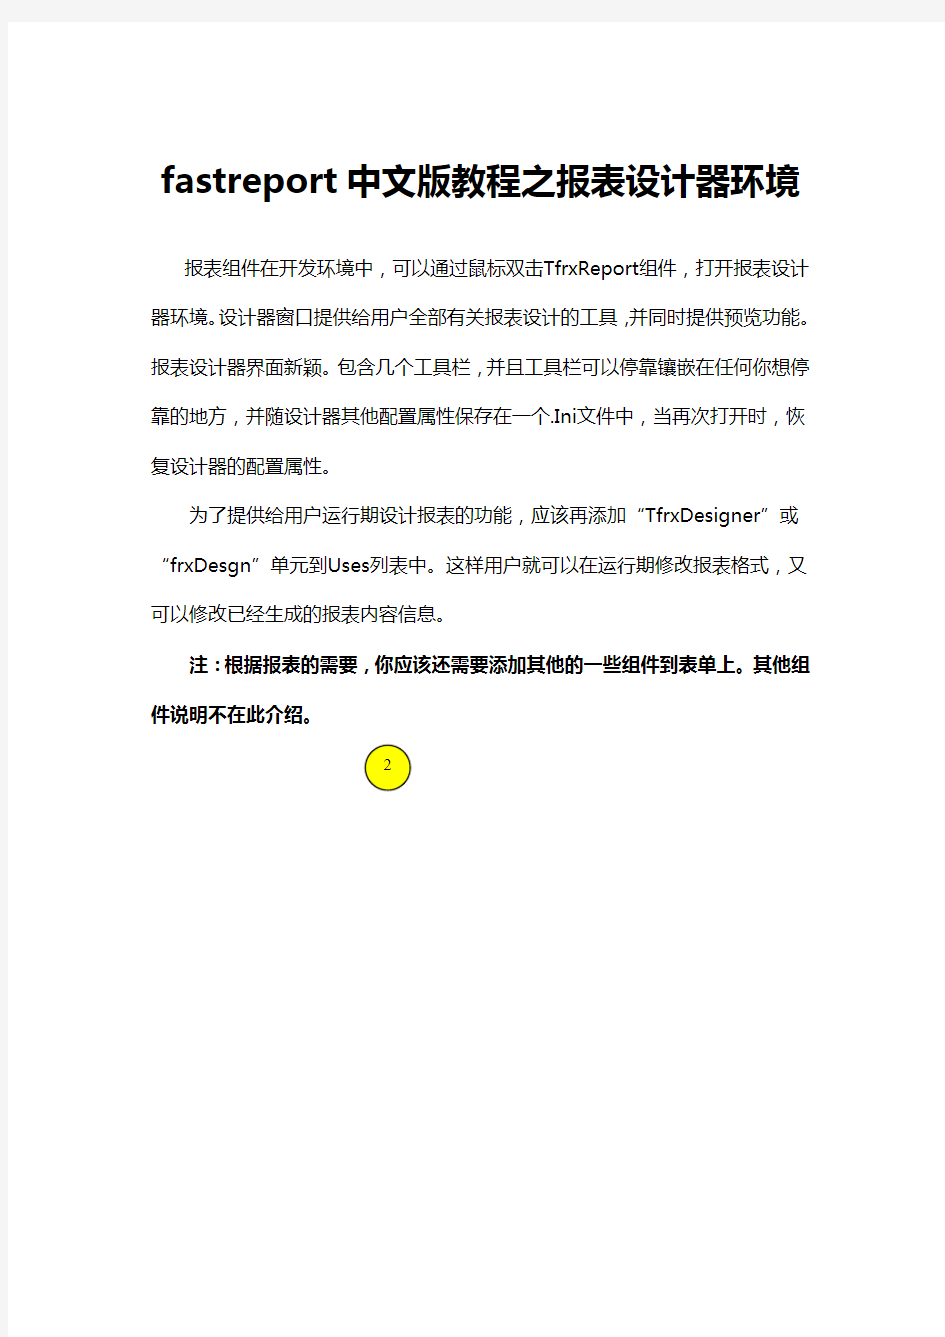 fastreport中文版教程之报表设计器环境